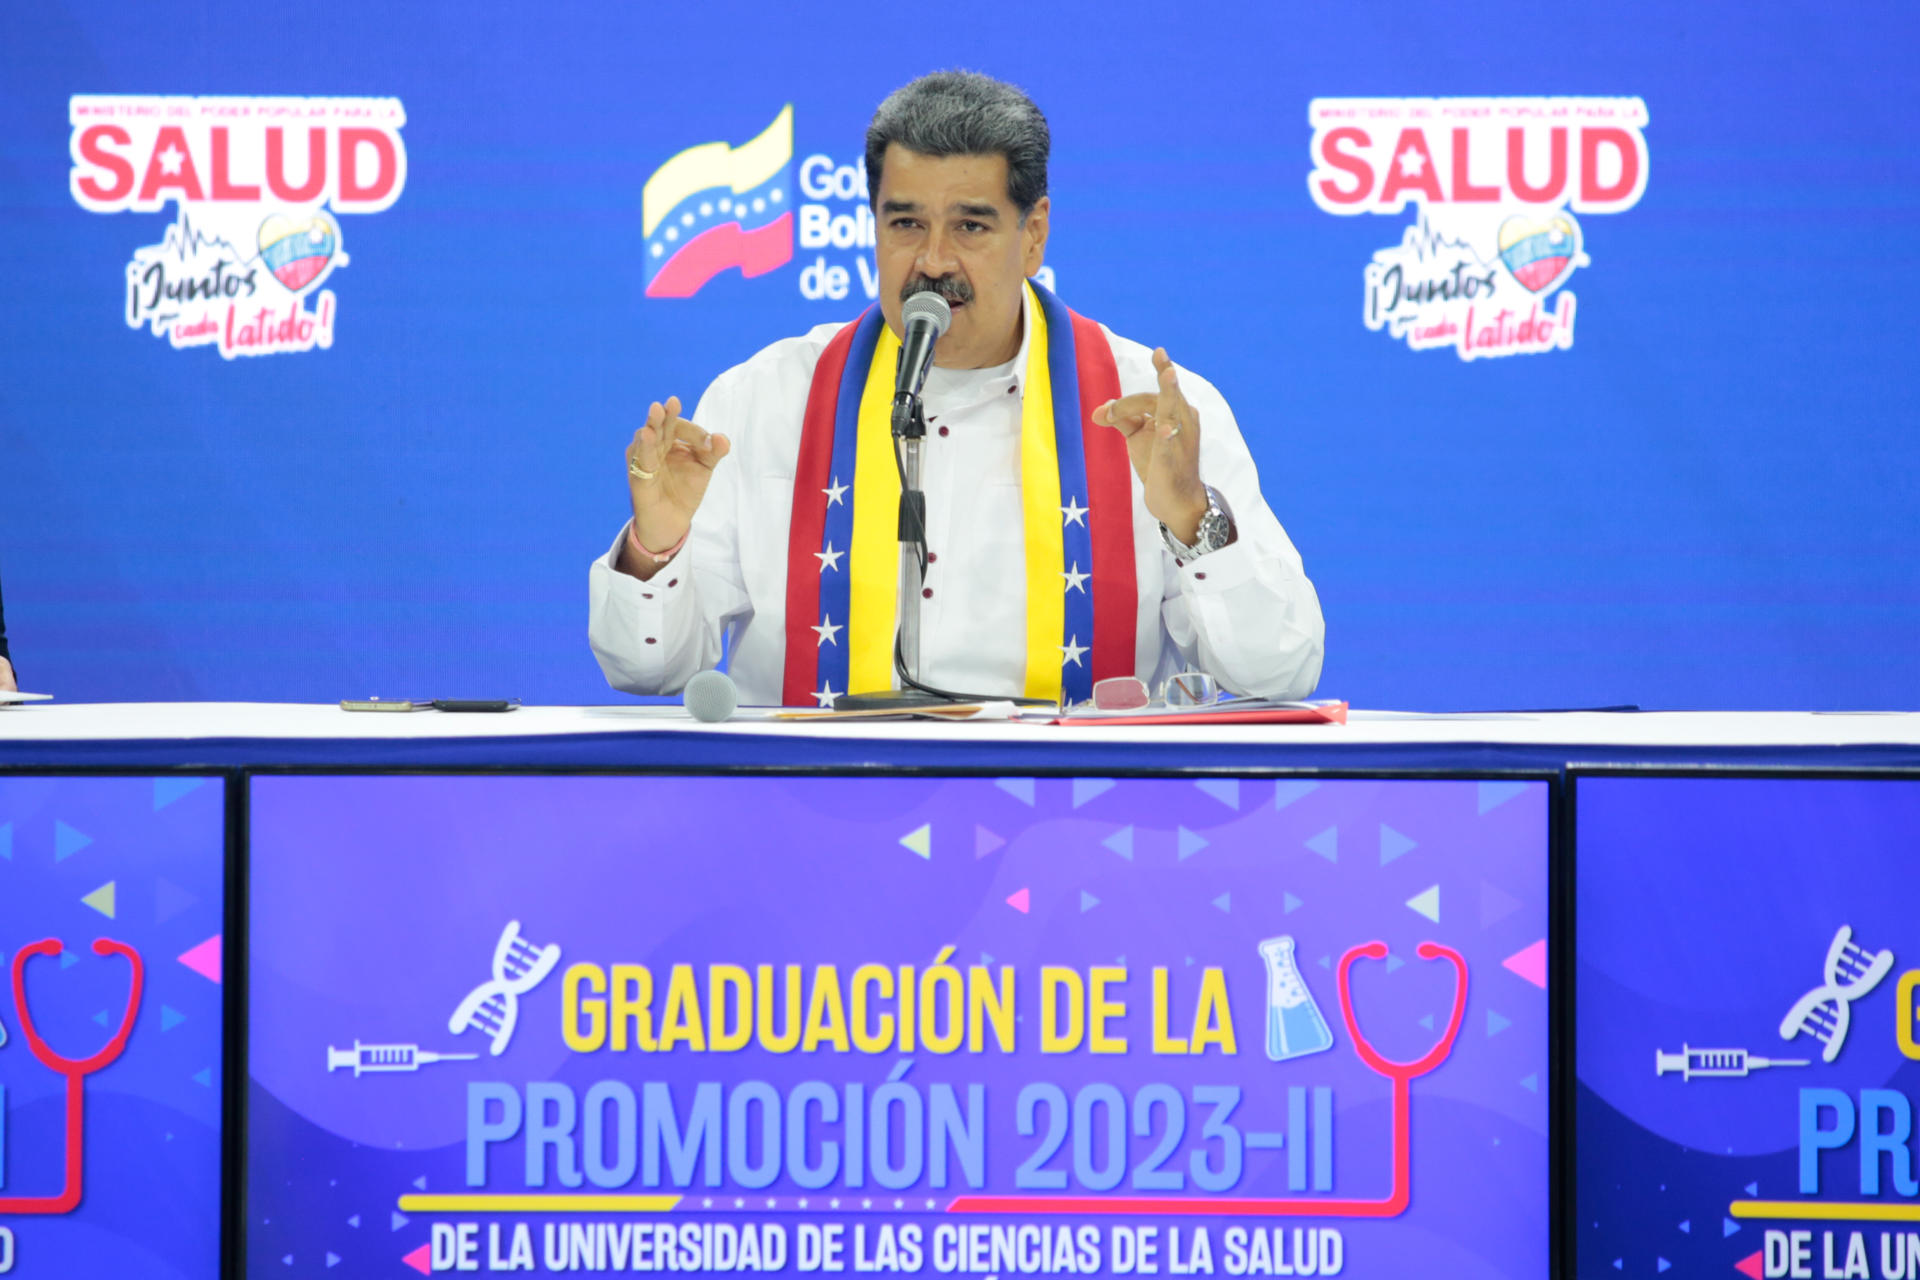 Fotografía cedida por Prensa de Miraflores del presidente venezolano, Nicolás Maduro, hablando durante un acto de gobierno hoy, en Caracas (Venezuela). EFE/Prensa de Miraflores